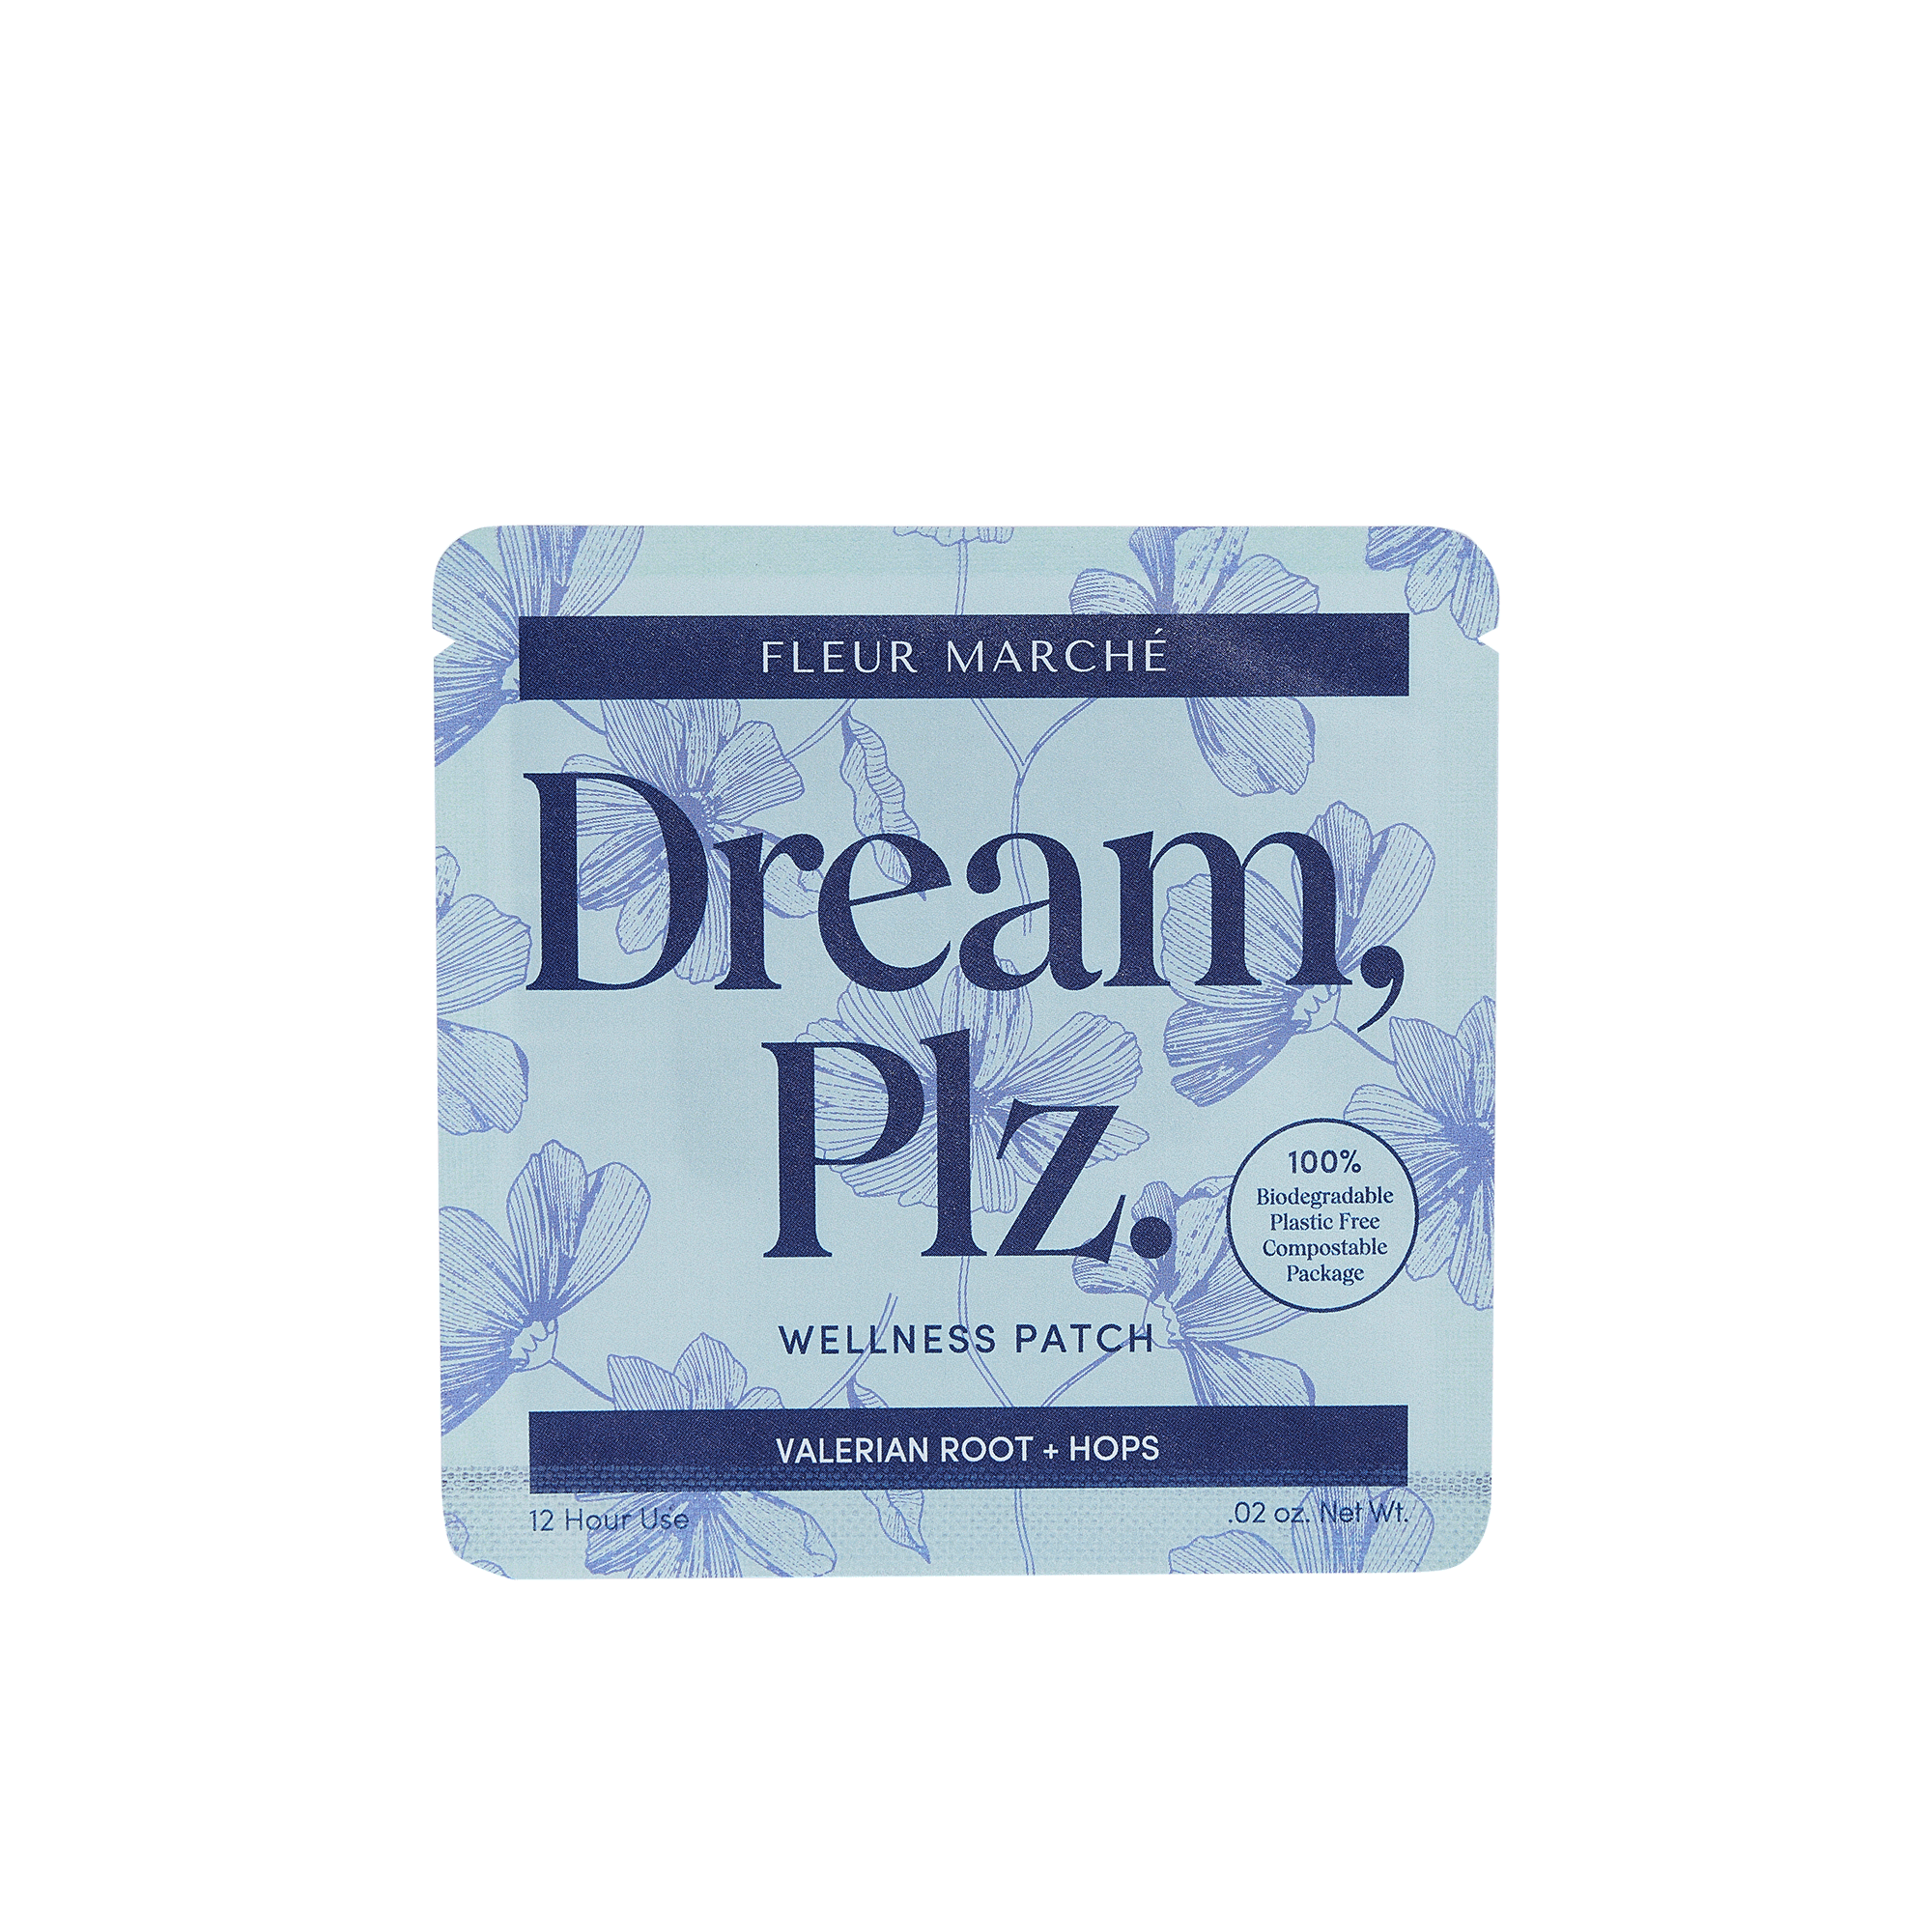 Dream, Plz. in container